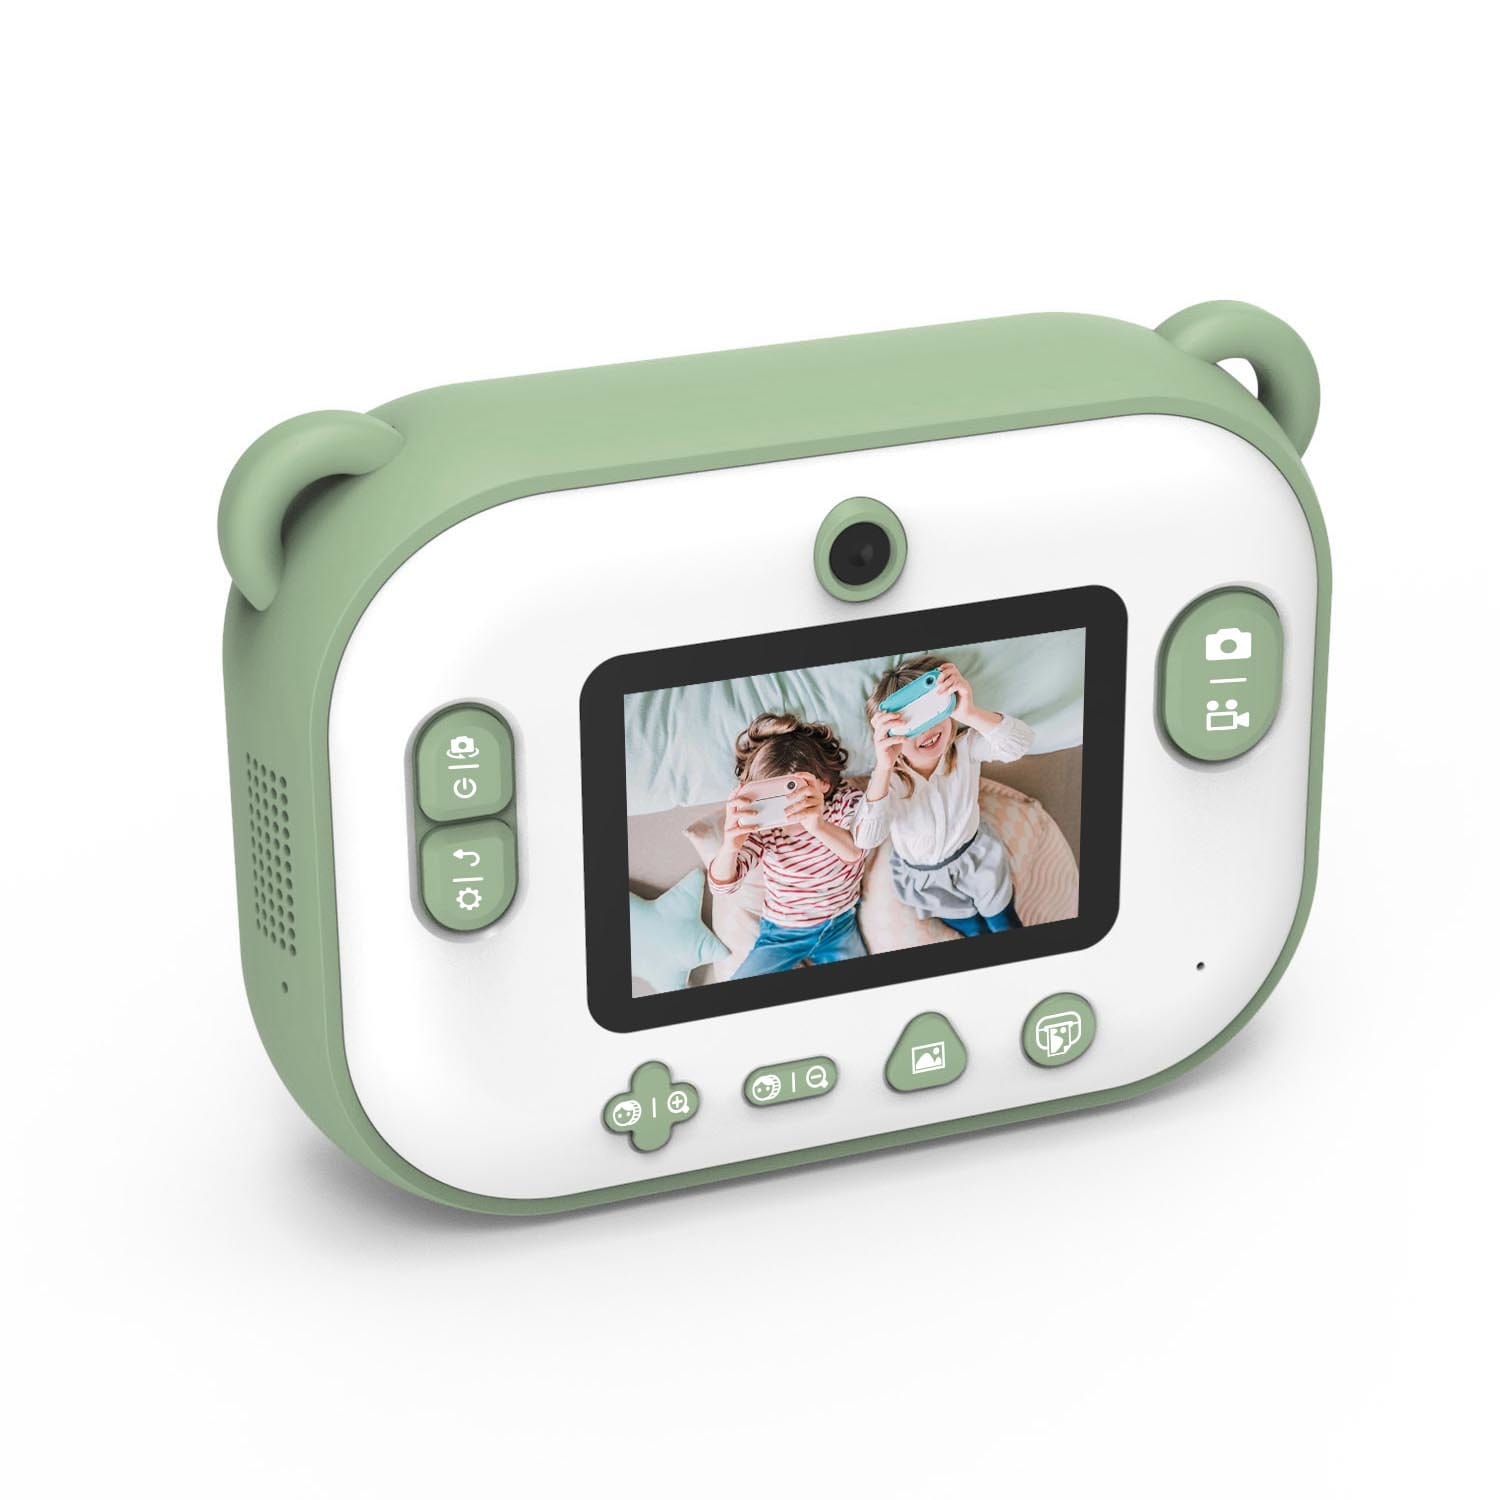 1 ou 2 appareils photo numériques pour enfants avec ou sans carte